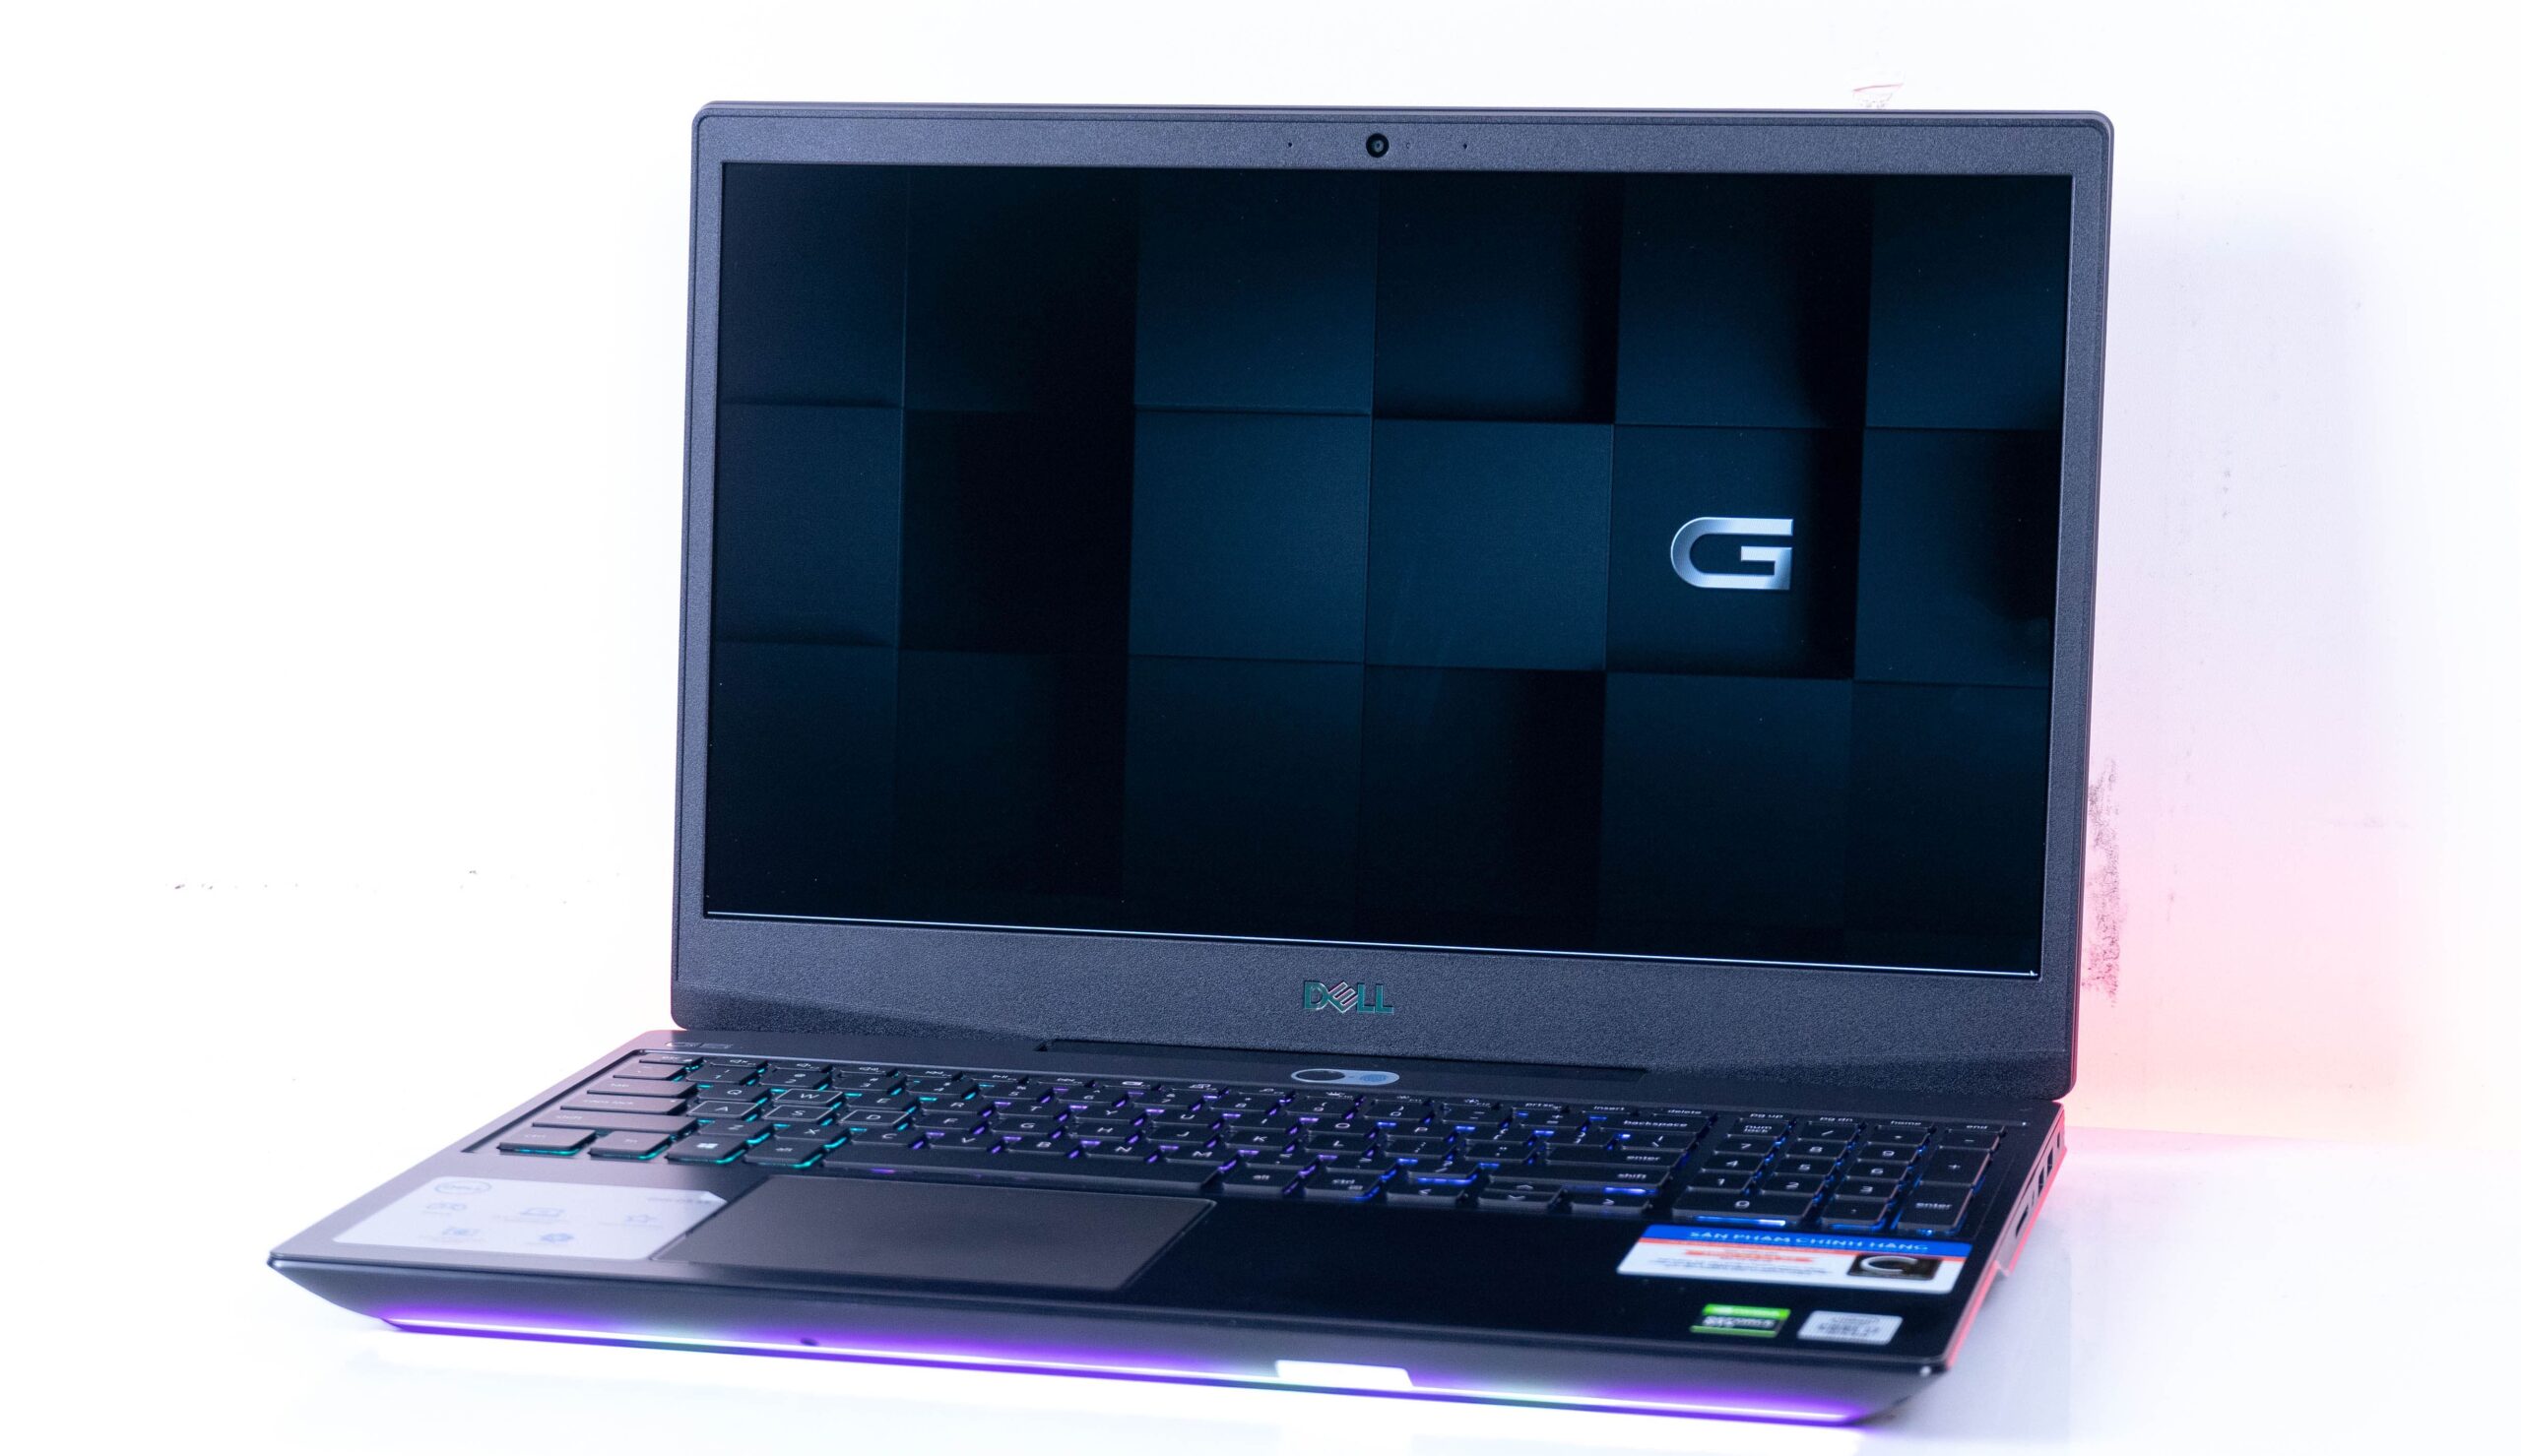 Đánh Giá Dell G5 15 Gaming Laptop 5590: Sức Mạnh Đầy Ấn Tượng Trong Tầm Giá